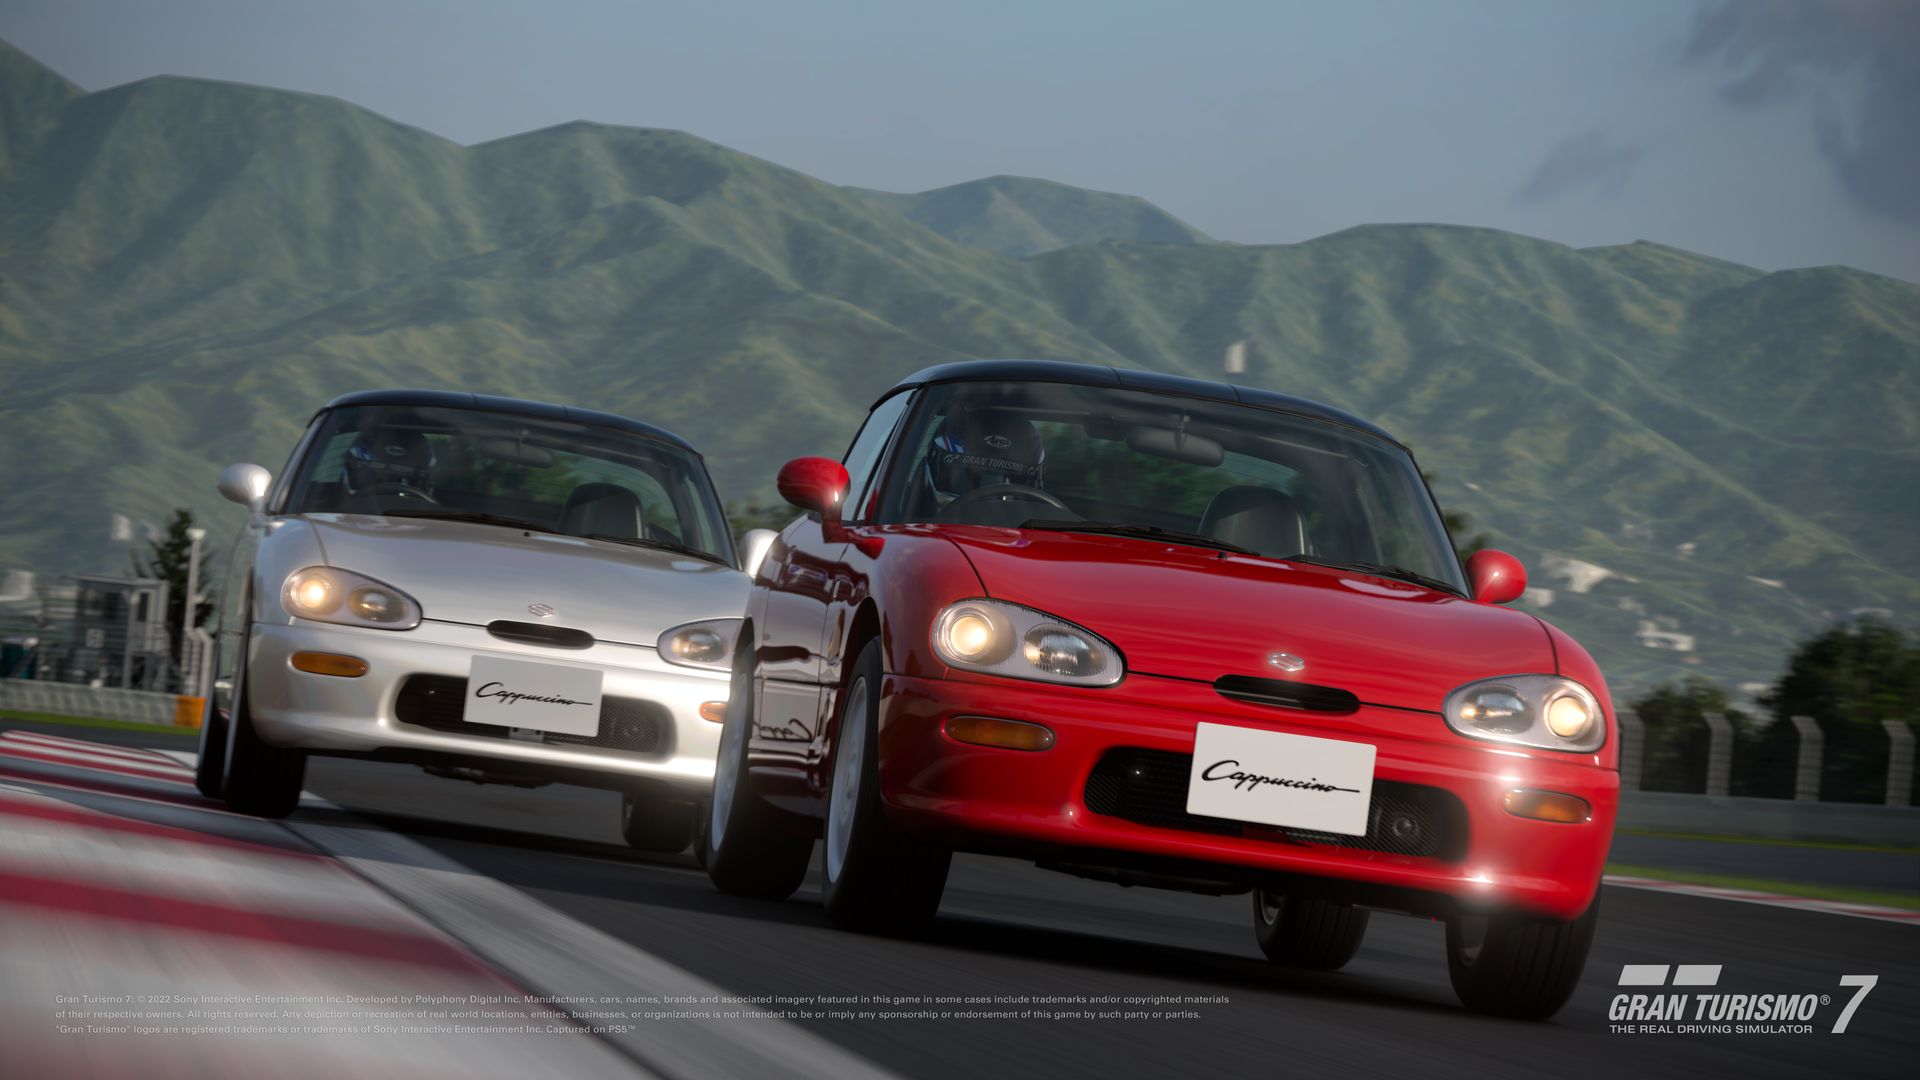 Apresentamos a atualização de setembro de Gran Turismo 7: Adicionamos 3  novos carros , incluindo um carro de corrida Mazda Gr.4! - RodasPresas